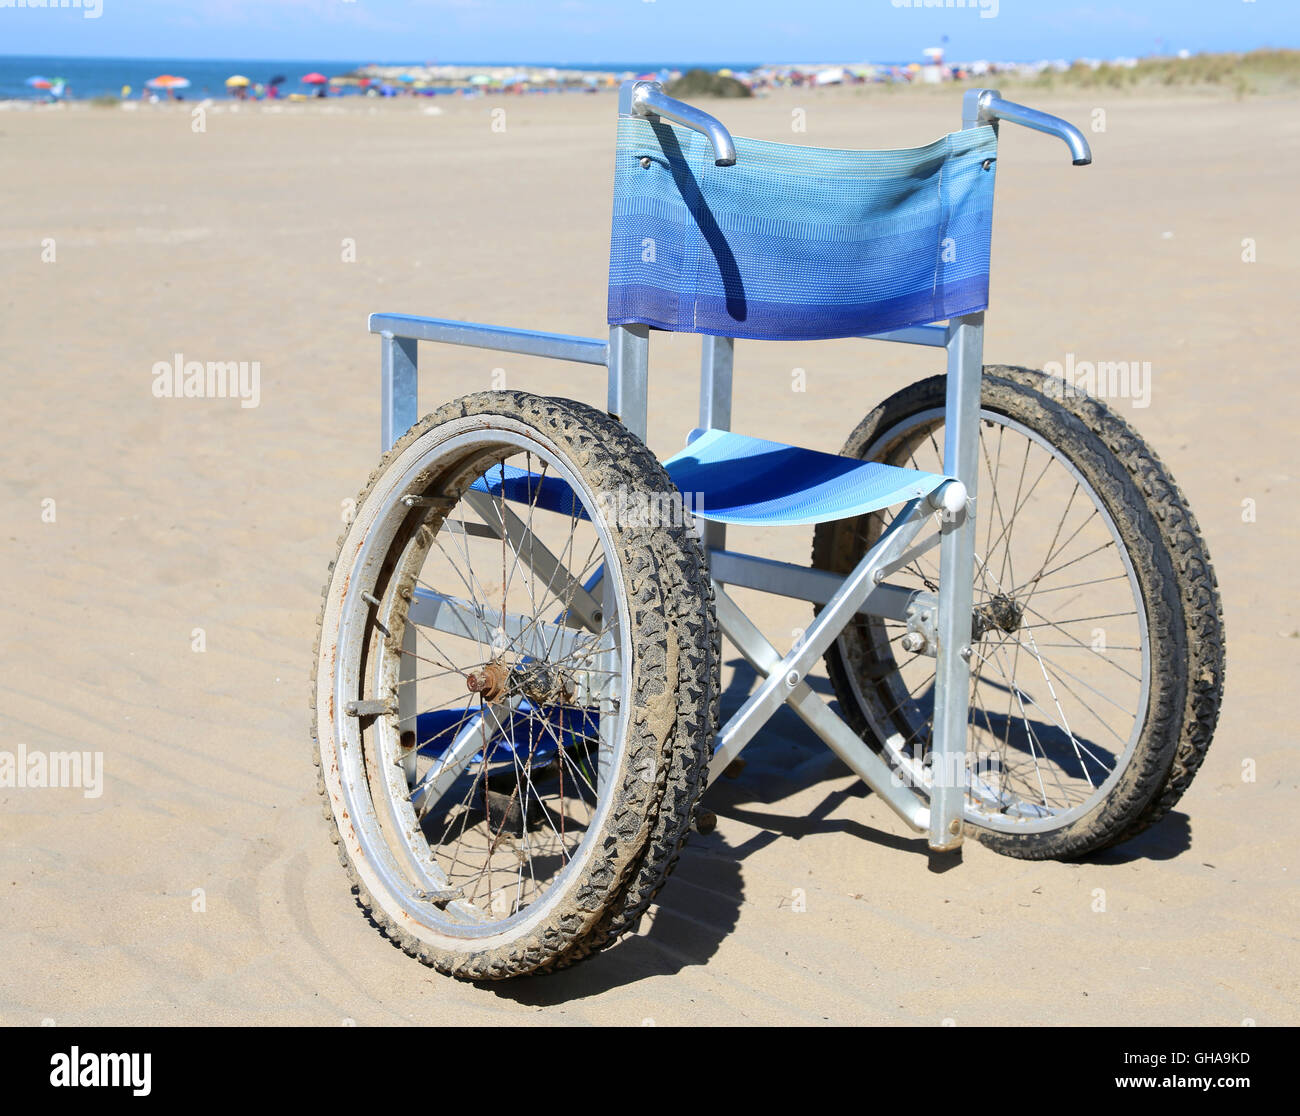 Sedia a rotelle alluminio sulla spiaggia al mare Foto Stock